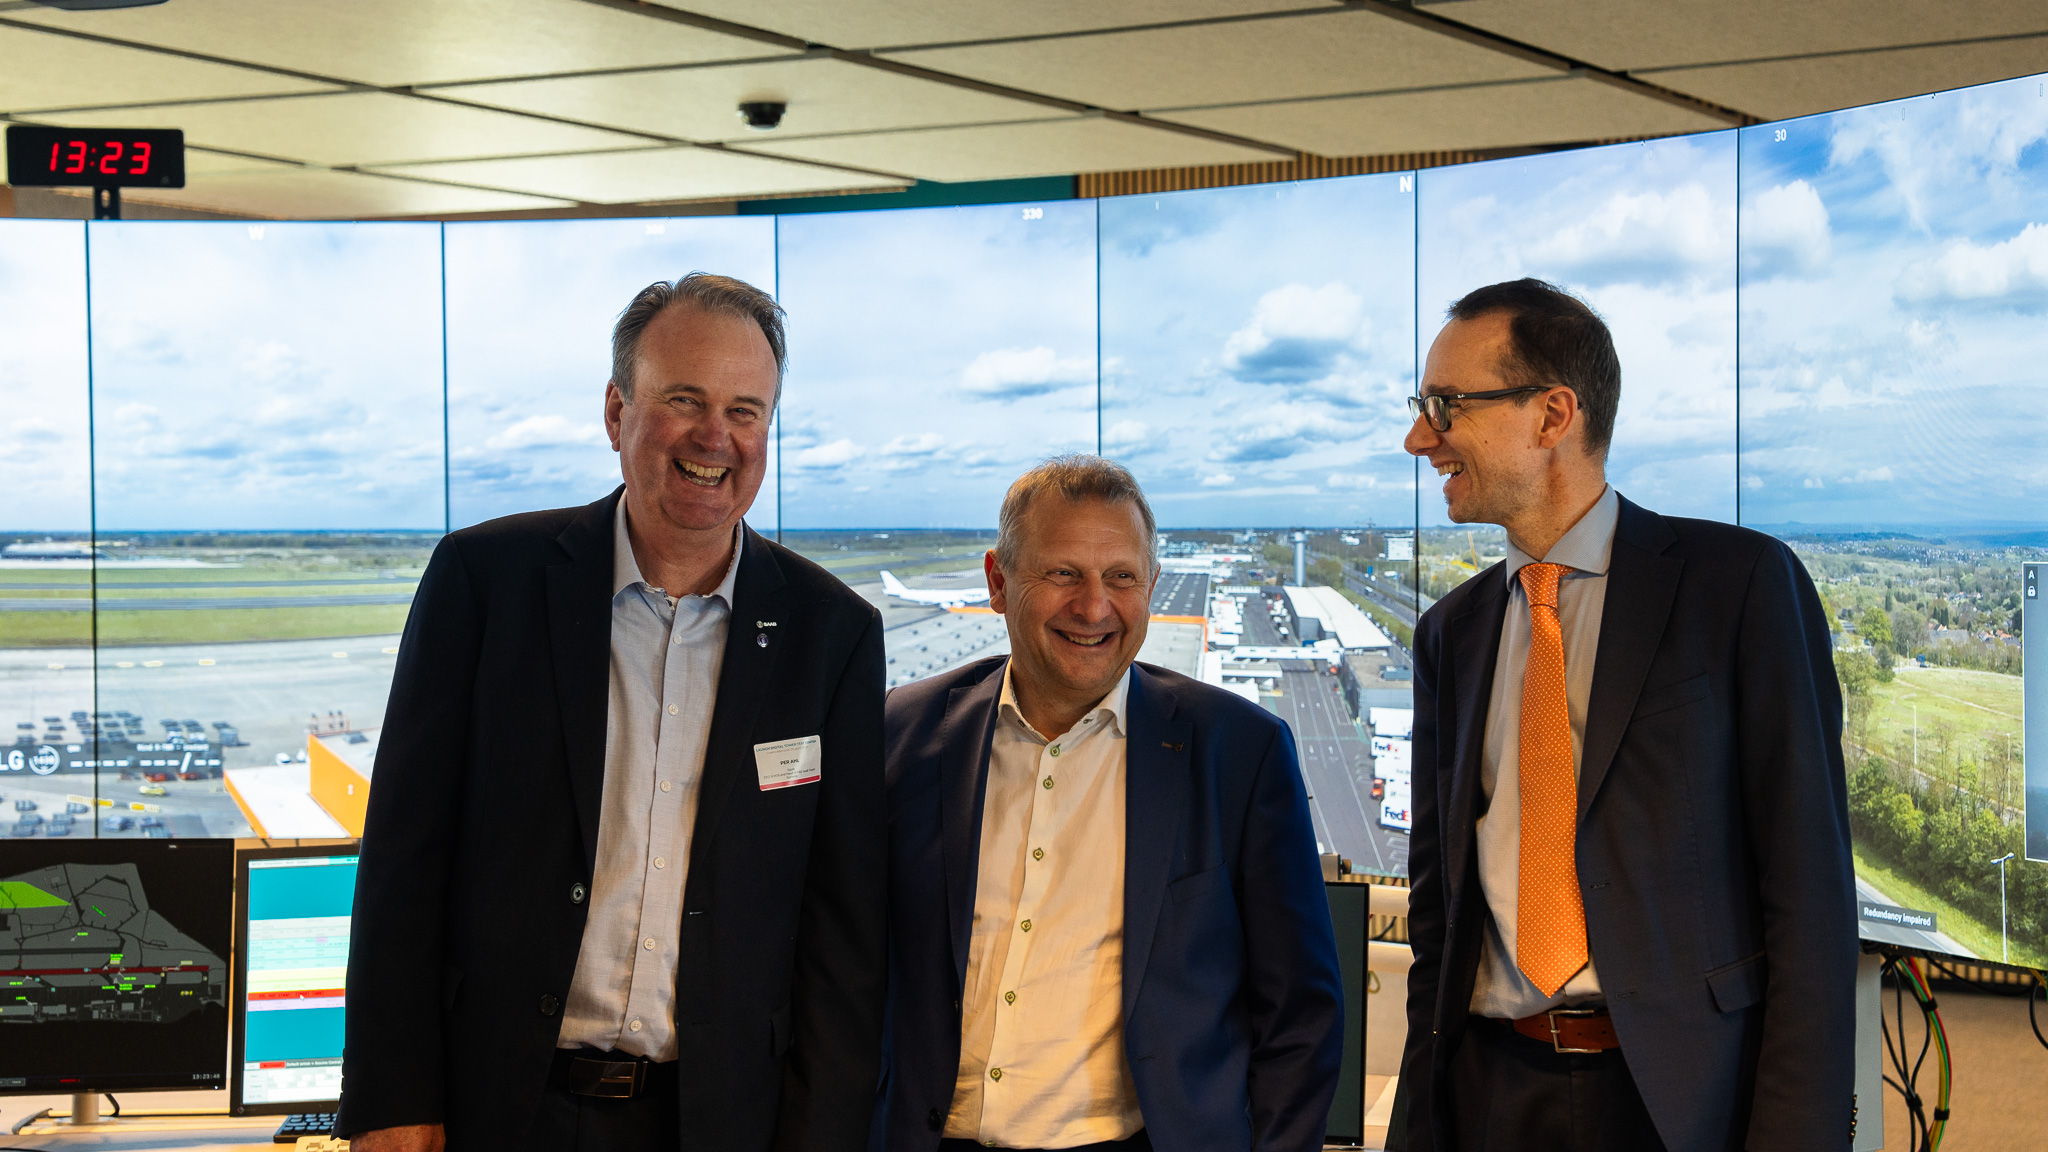 Des visages heureux parmi les trois acteurs clés de cette journée importante. De gauche à droite : Per Ahl, CEO de SAAB, Johan Decuyper, CEO de skeyes, Nicolas Thisquen, président de SOWAER.